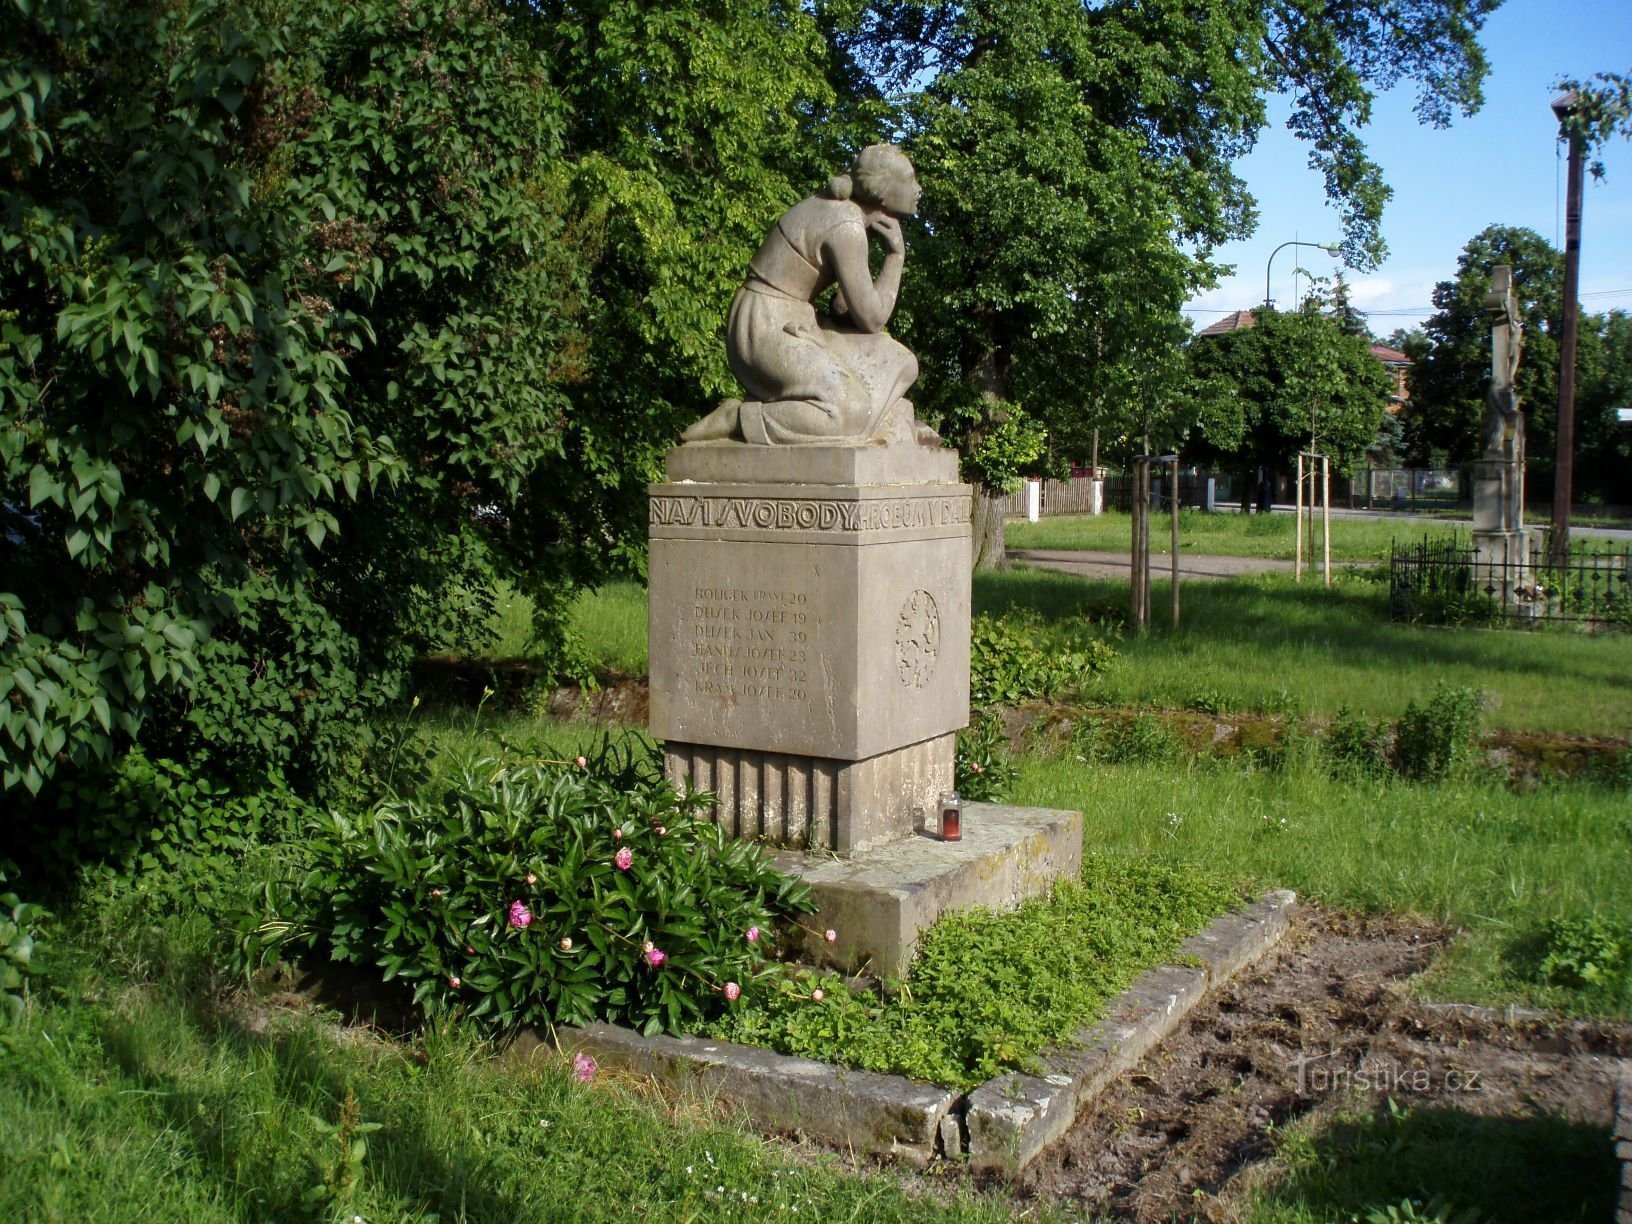 Đài tưởng niệm những người đã chết trong Chiến tranh thế giới thứ nhất ở Piletice (Hradec Králové, ngày 1 tháng 1.6.2009 năm XNUMX)